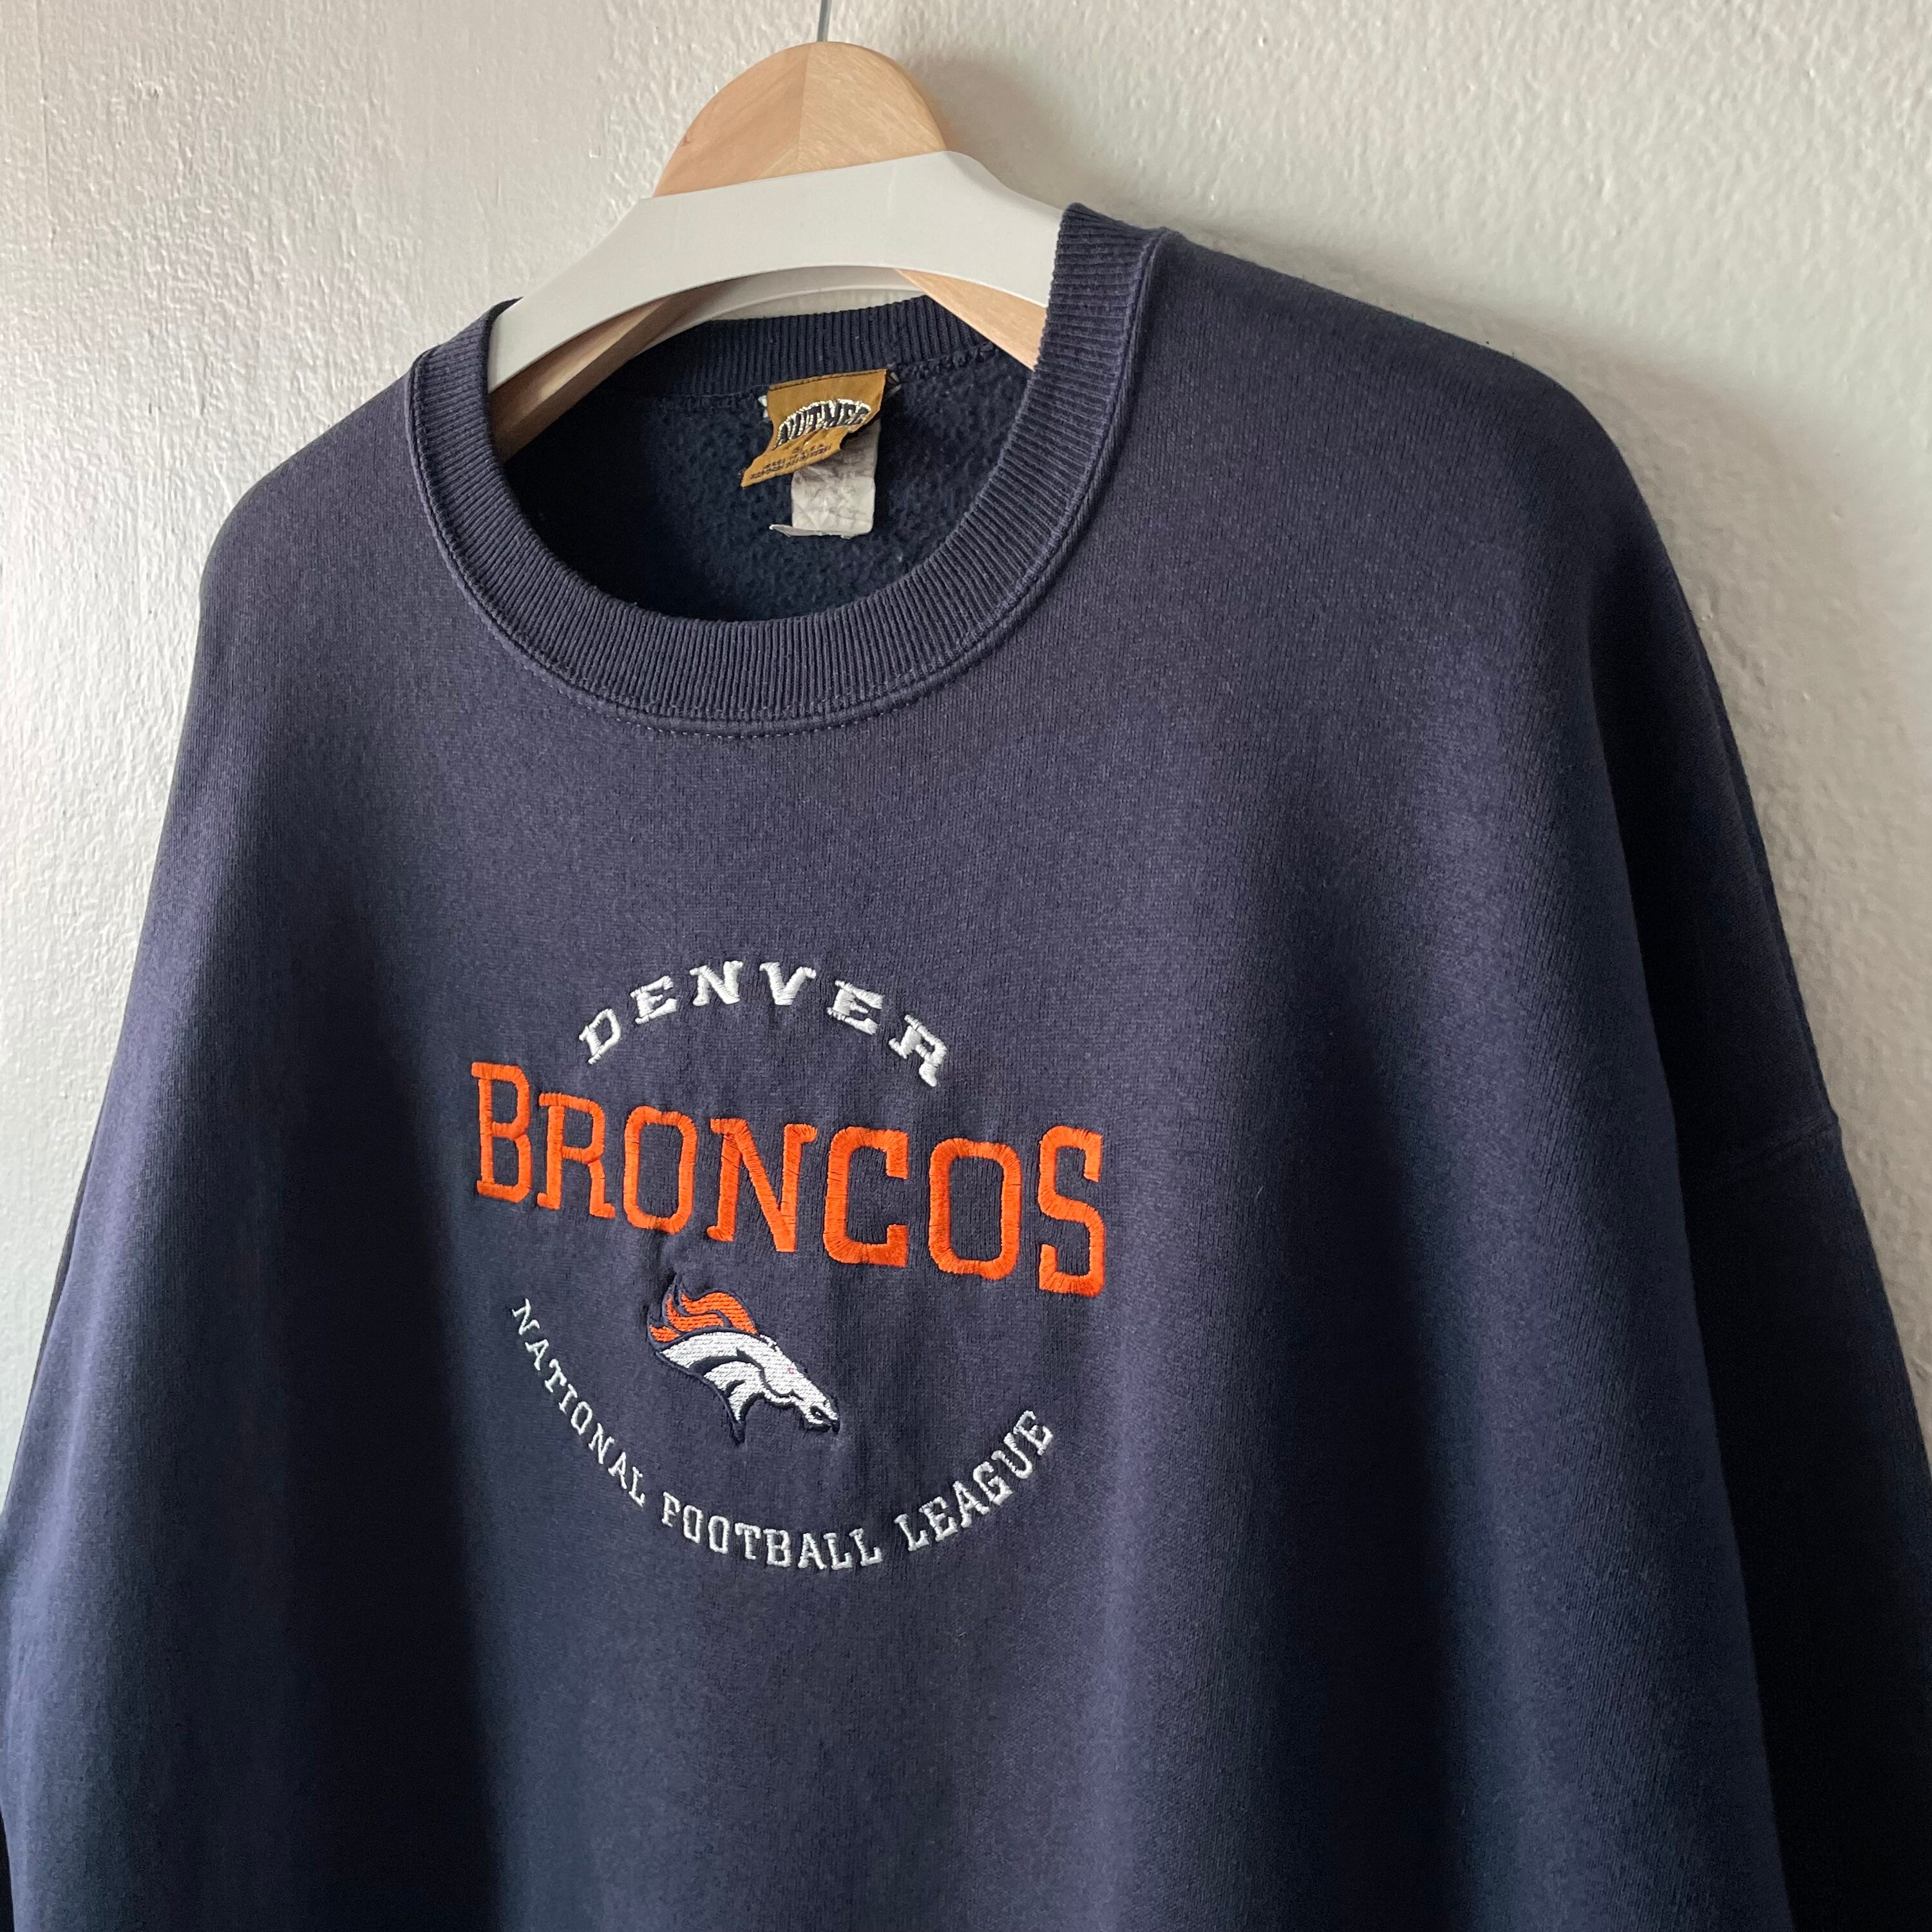 Vintage 90s Denver Broncos NFL Football Embroidered Crewneck | Etsy